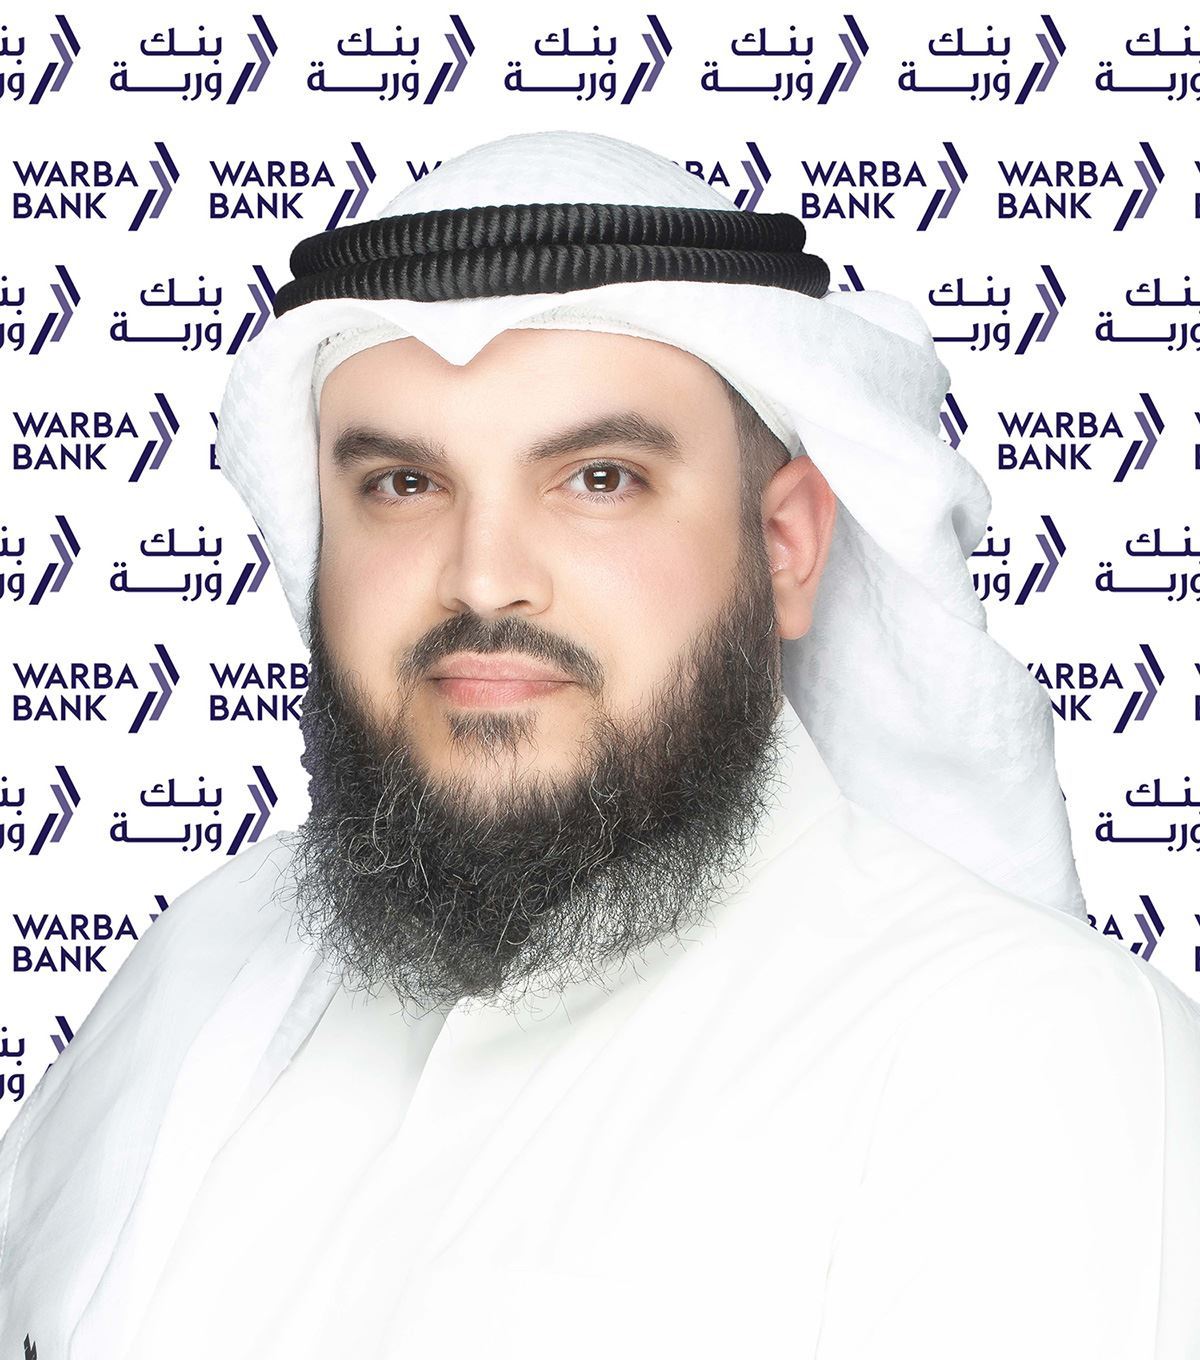 السيد ثويني خالد الثويني، رئيس المجموعة المصرفية للاستثمار في بنك وربة